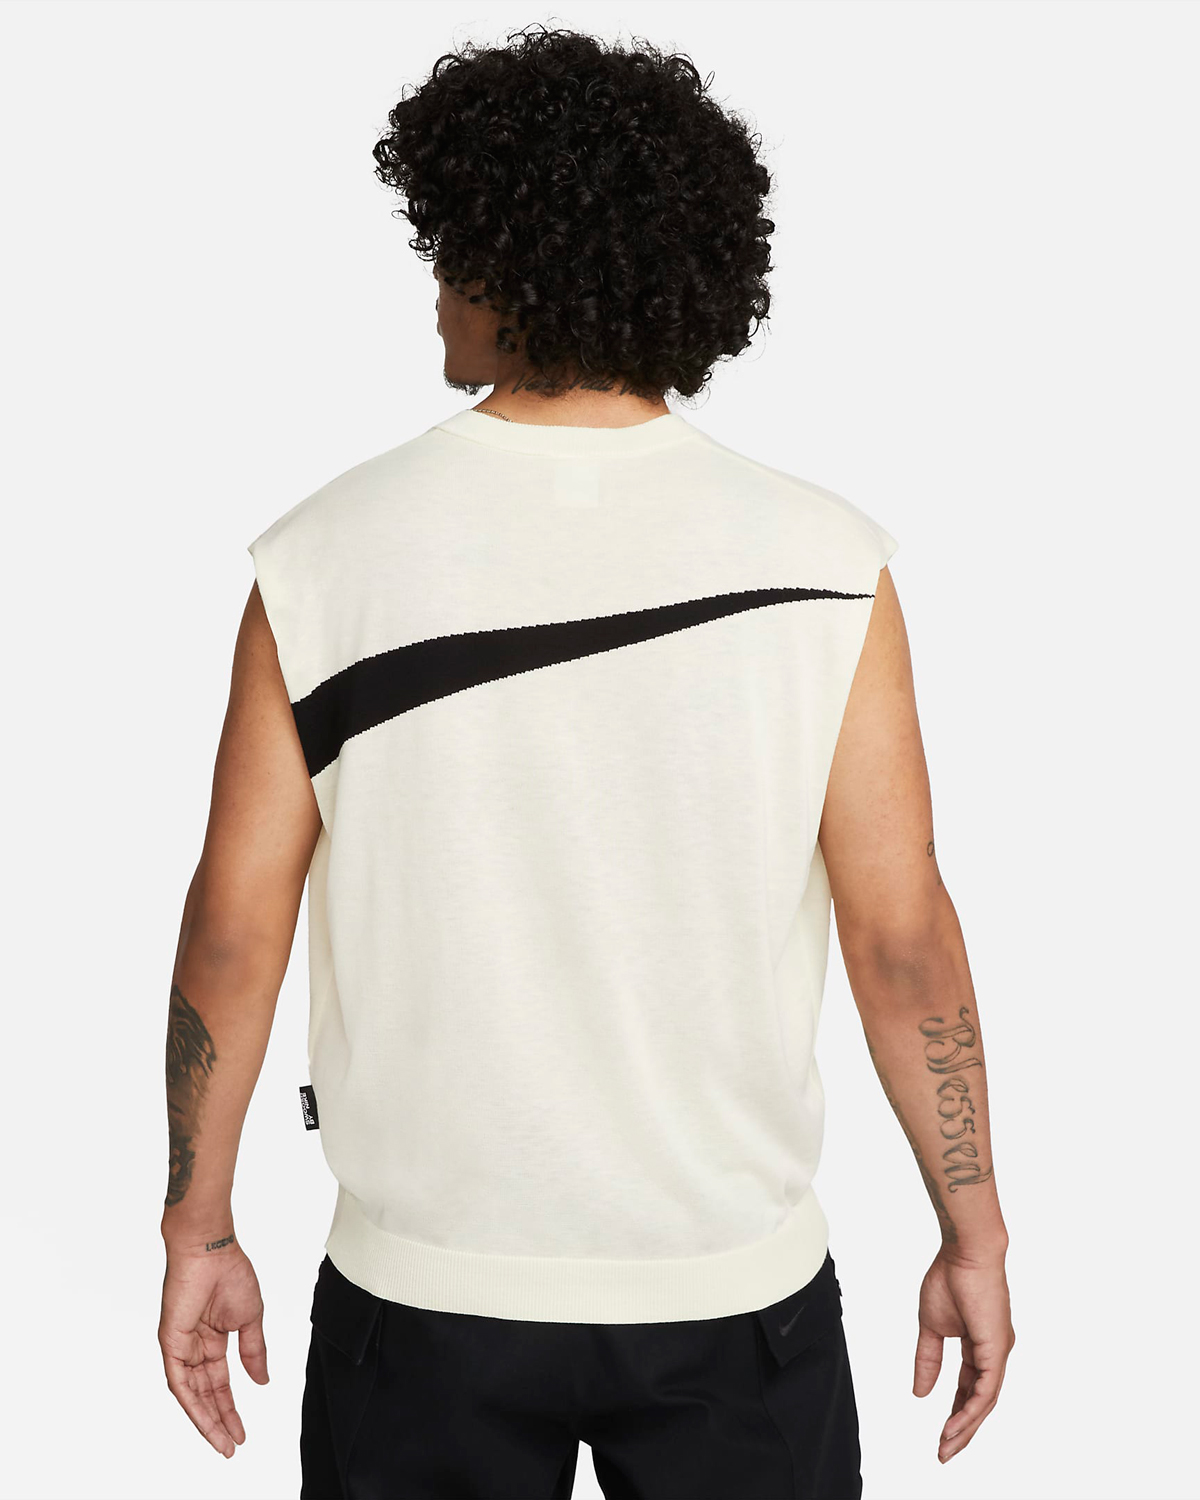 Nike-Sportswear-Swoosh-Sweater-Vest-Coconut-Milk-Black-2